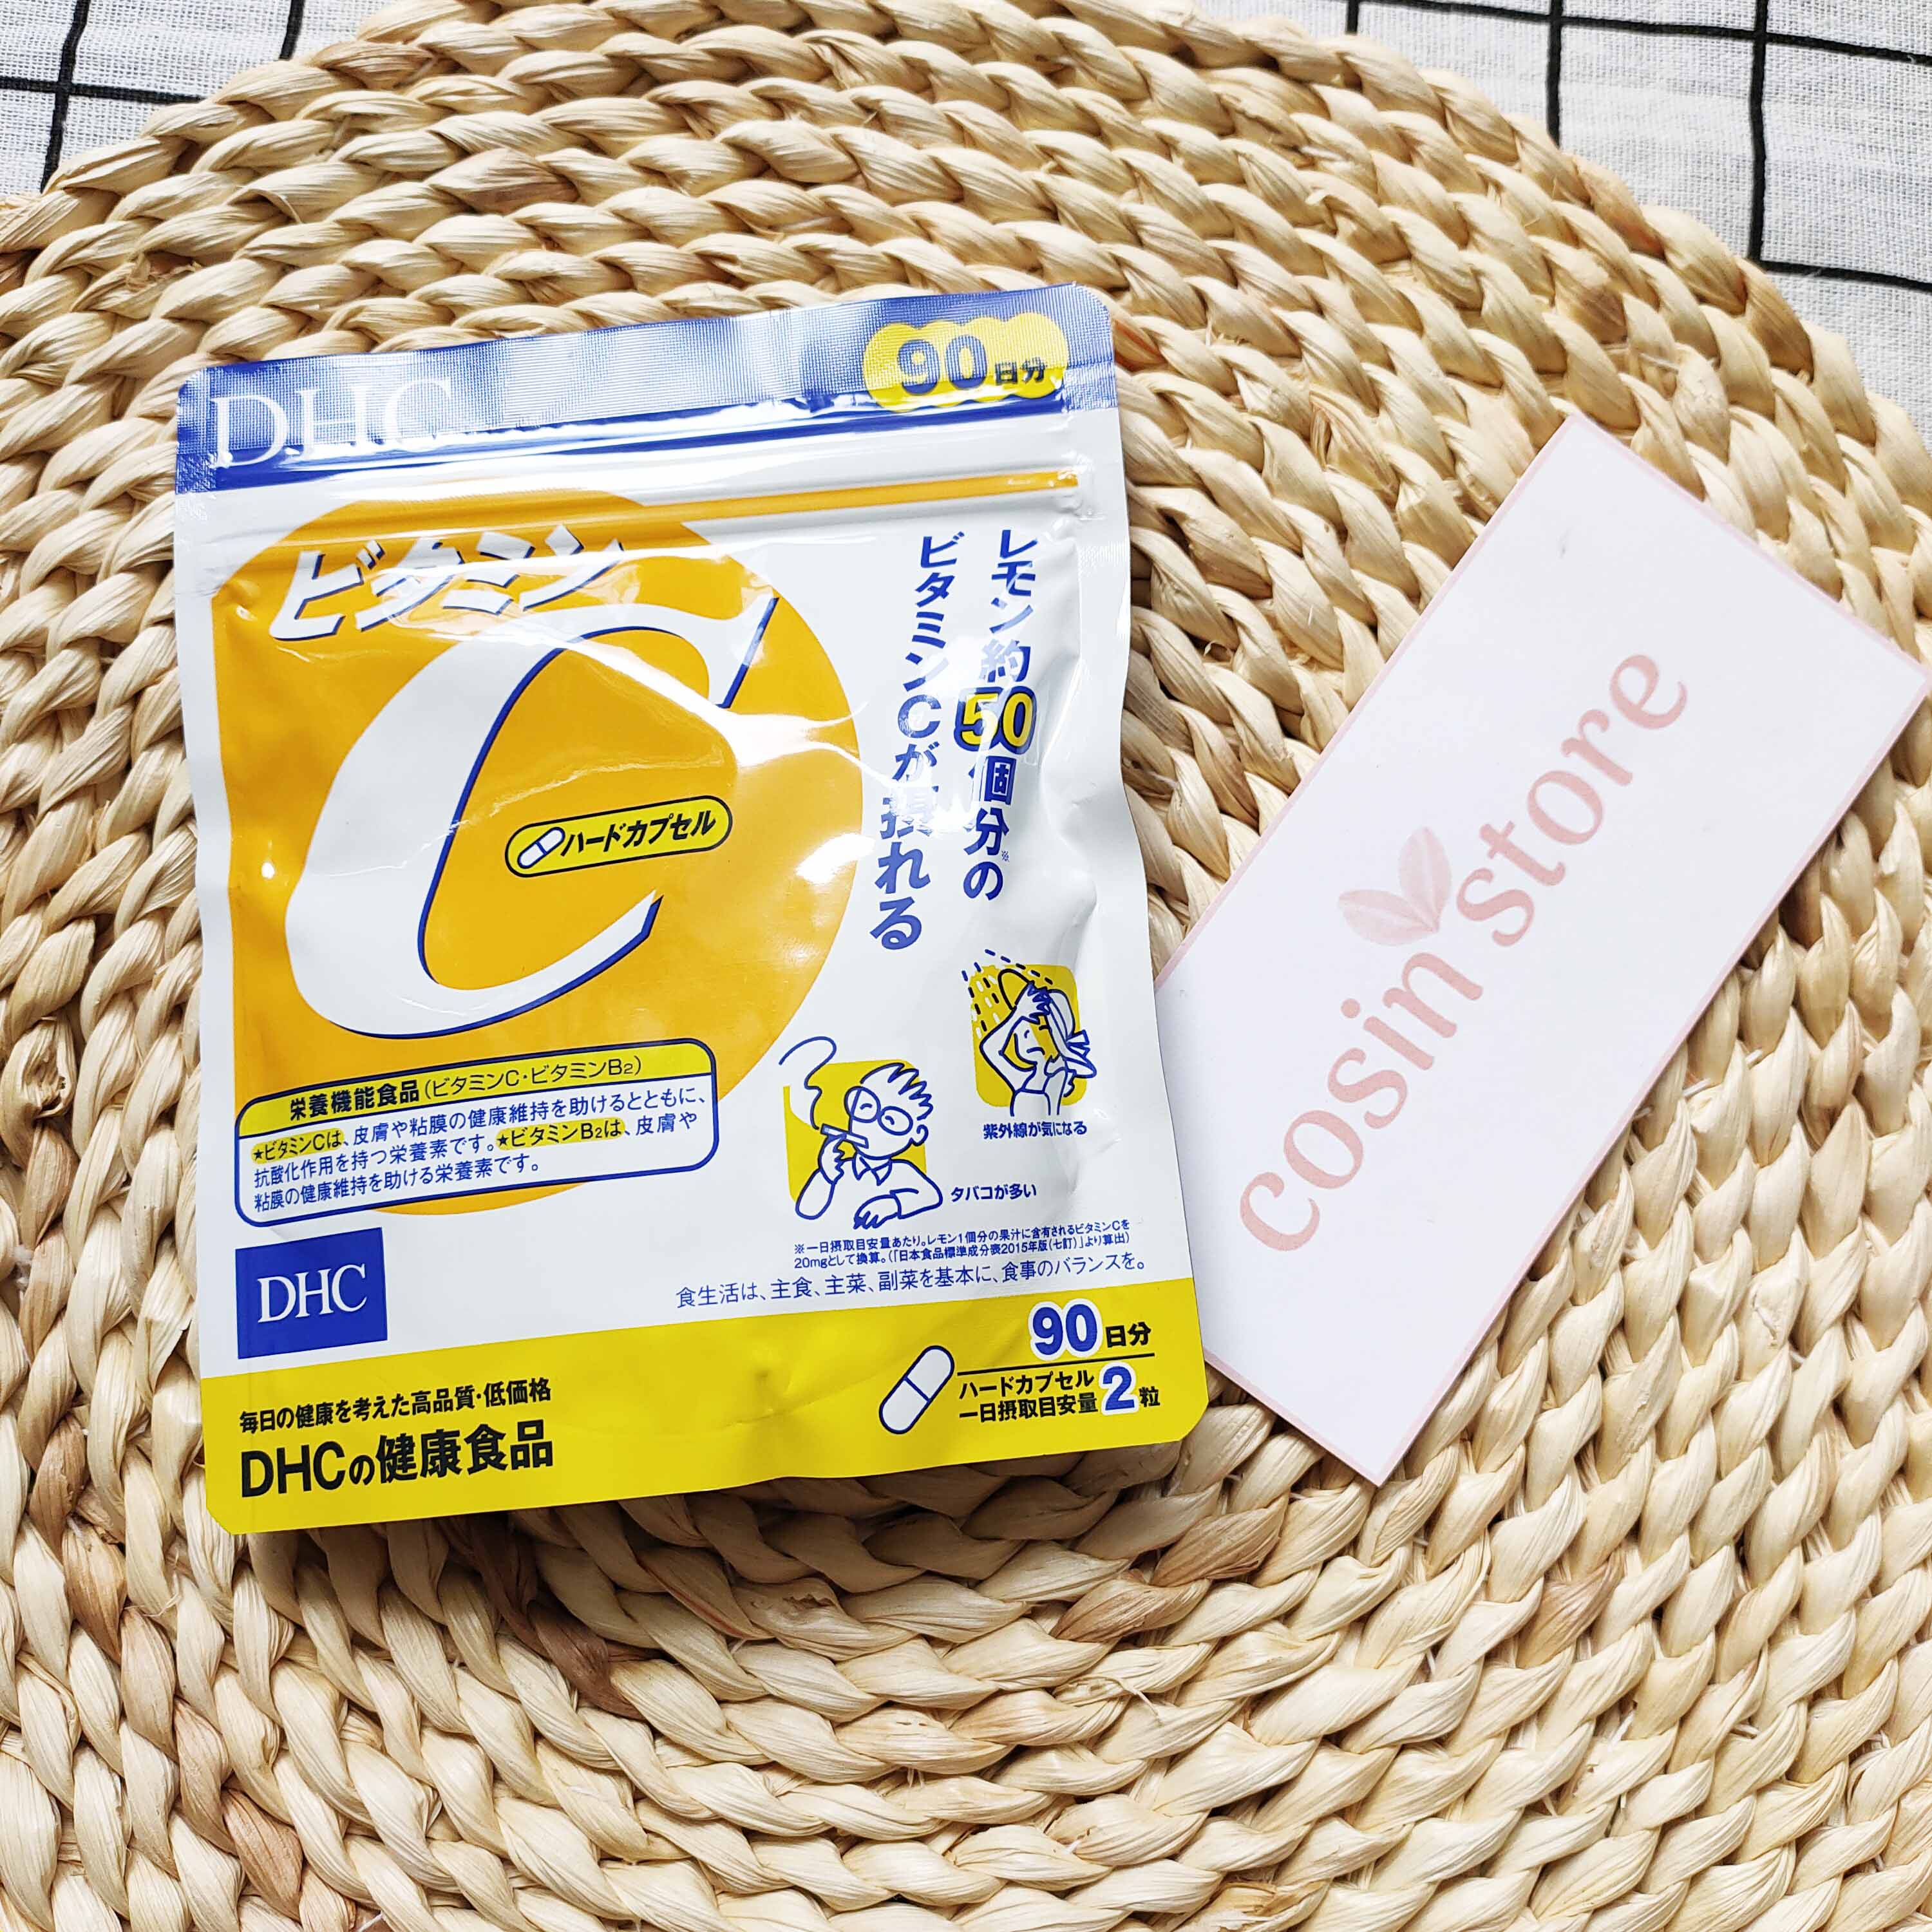 Viên uống DHC Vitamin C Hard Capsule túi 180 viên 90 ngày 60 Viên 30 Ngày của Nhật Bản dùng tăng sức đề kháng, hỗ trợ sáng da - Cosin Store